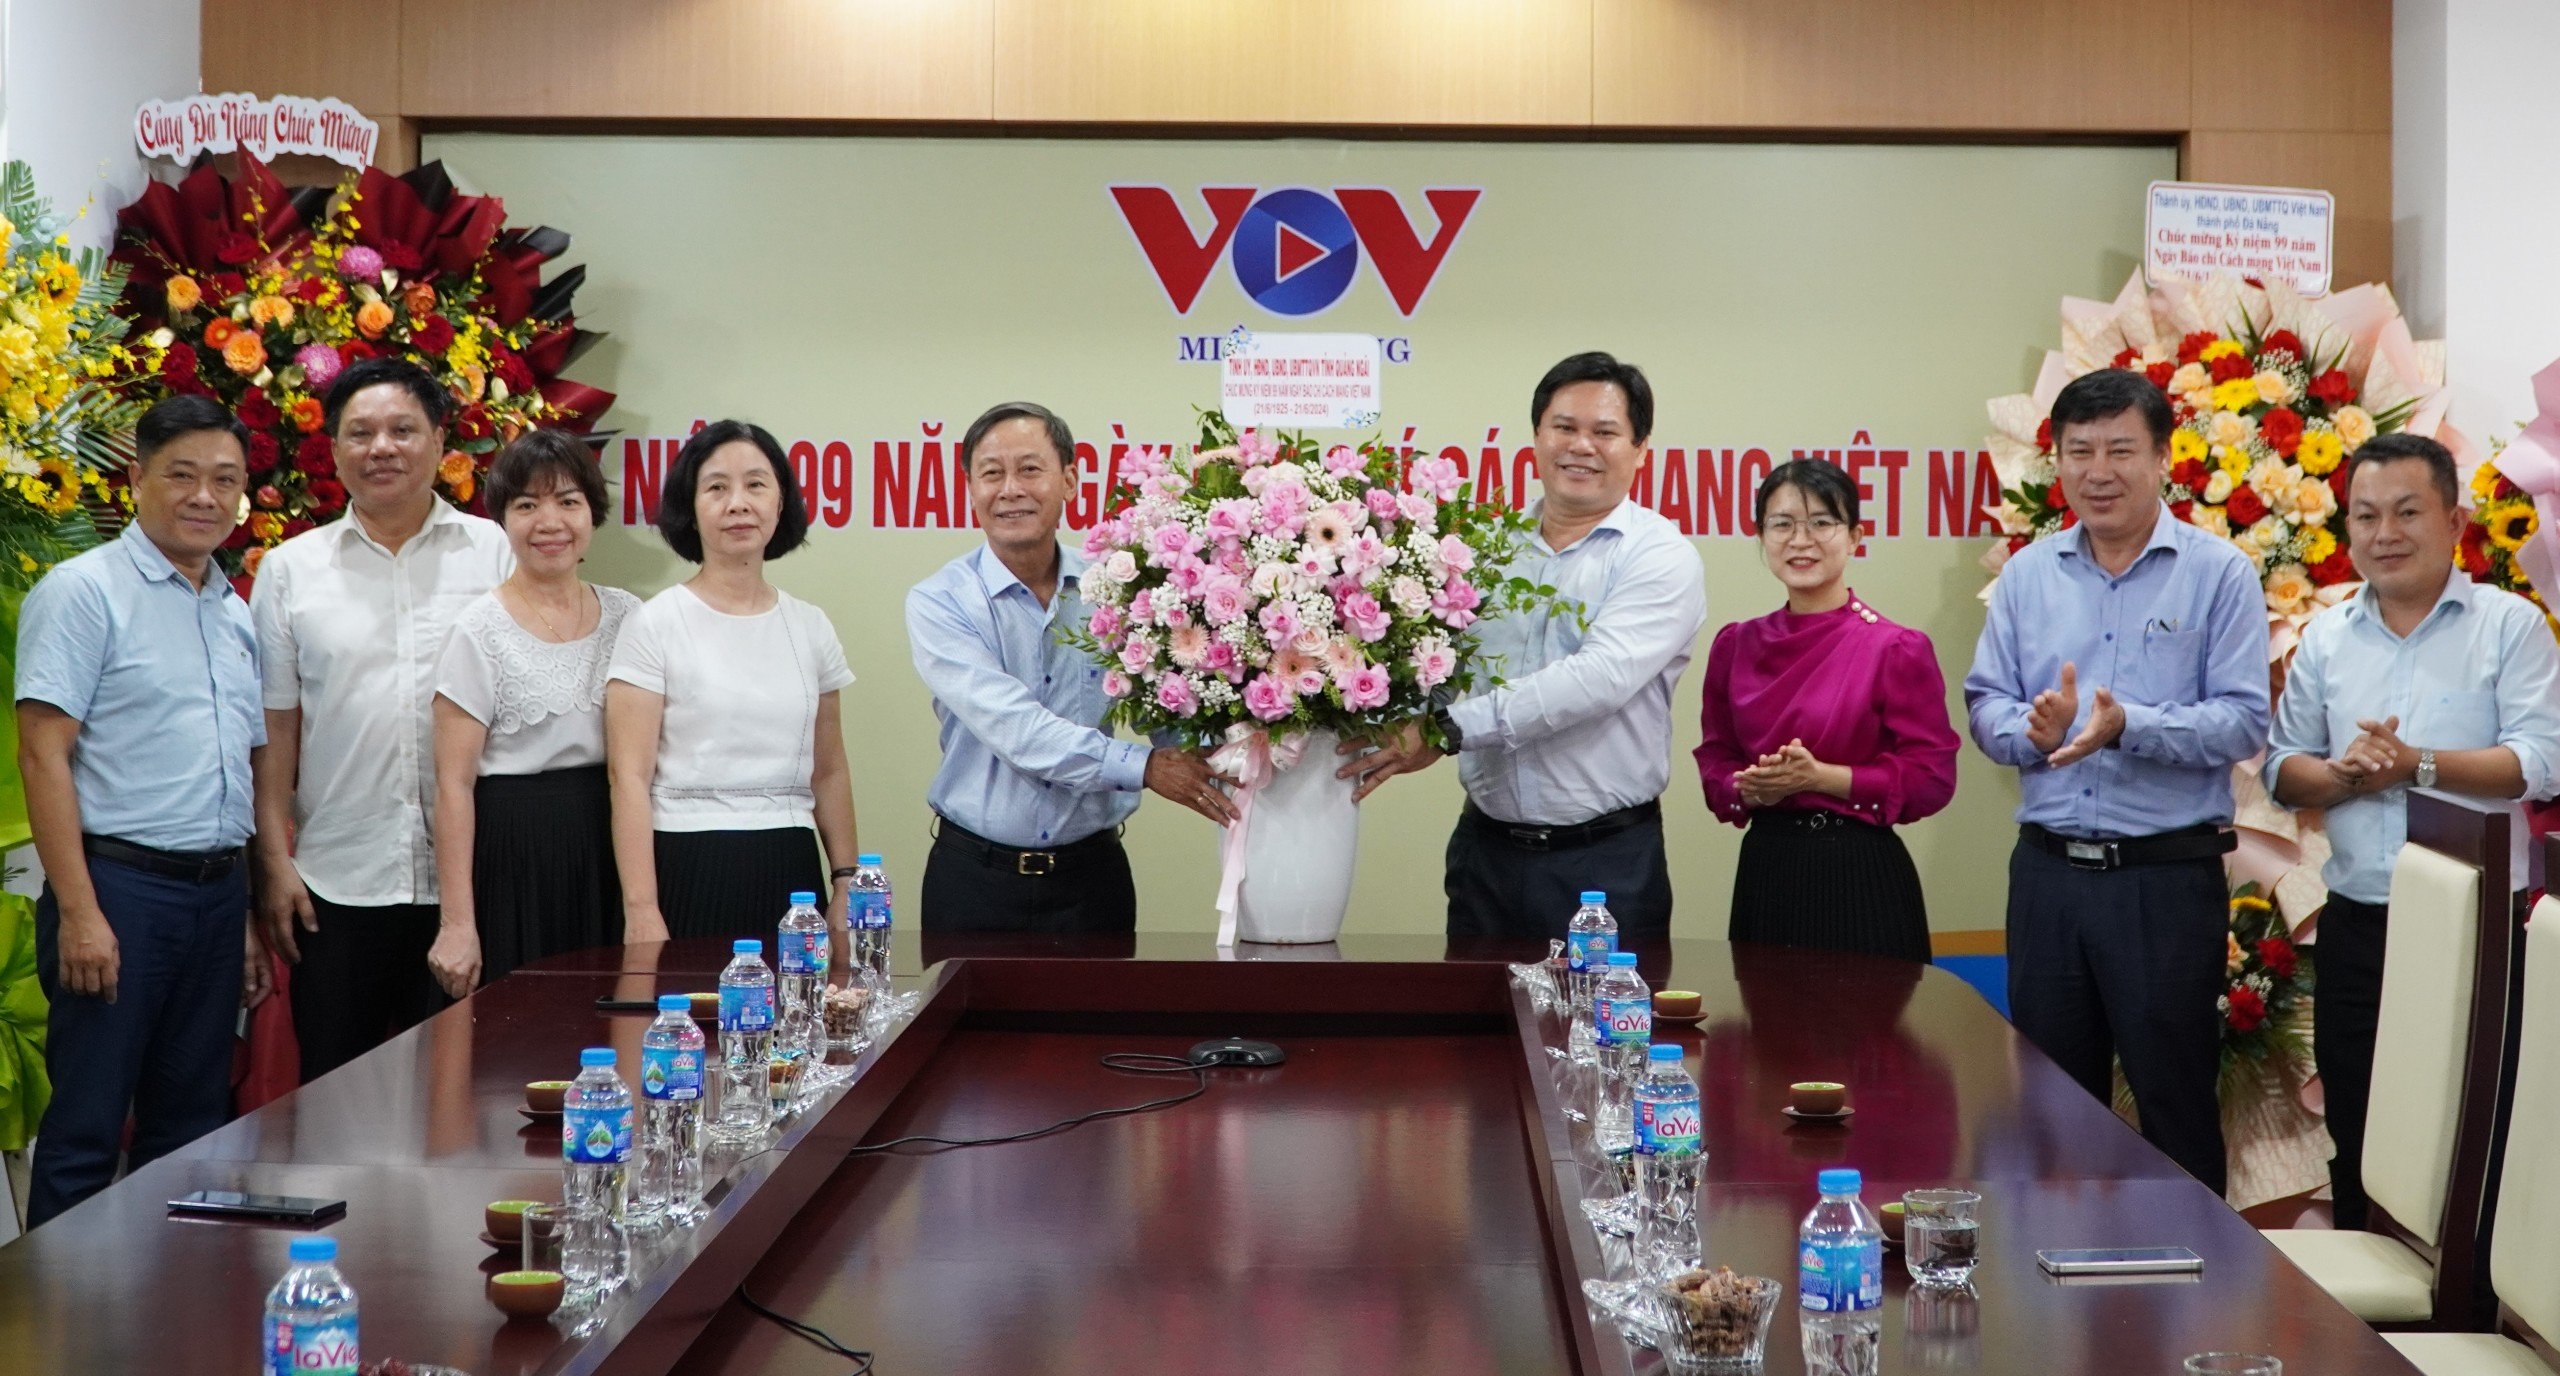 Phó Chủ tịch UBND tỉnh Trần Phước Hiền thăm chúc mừng VOV miền Trung